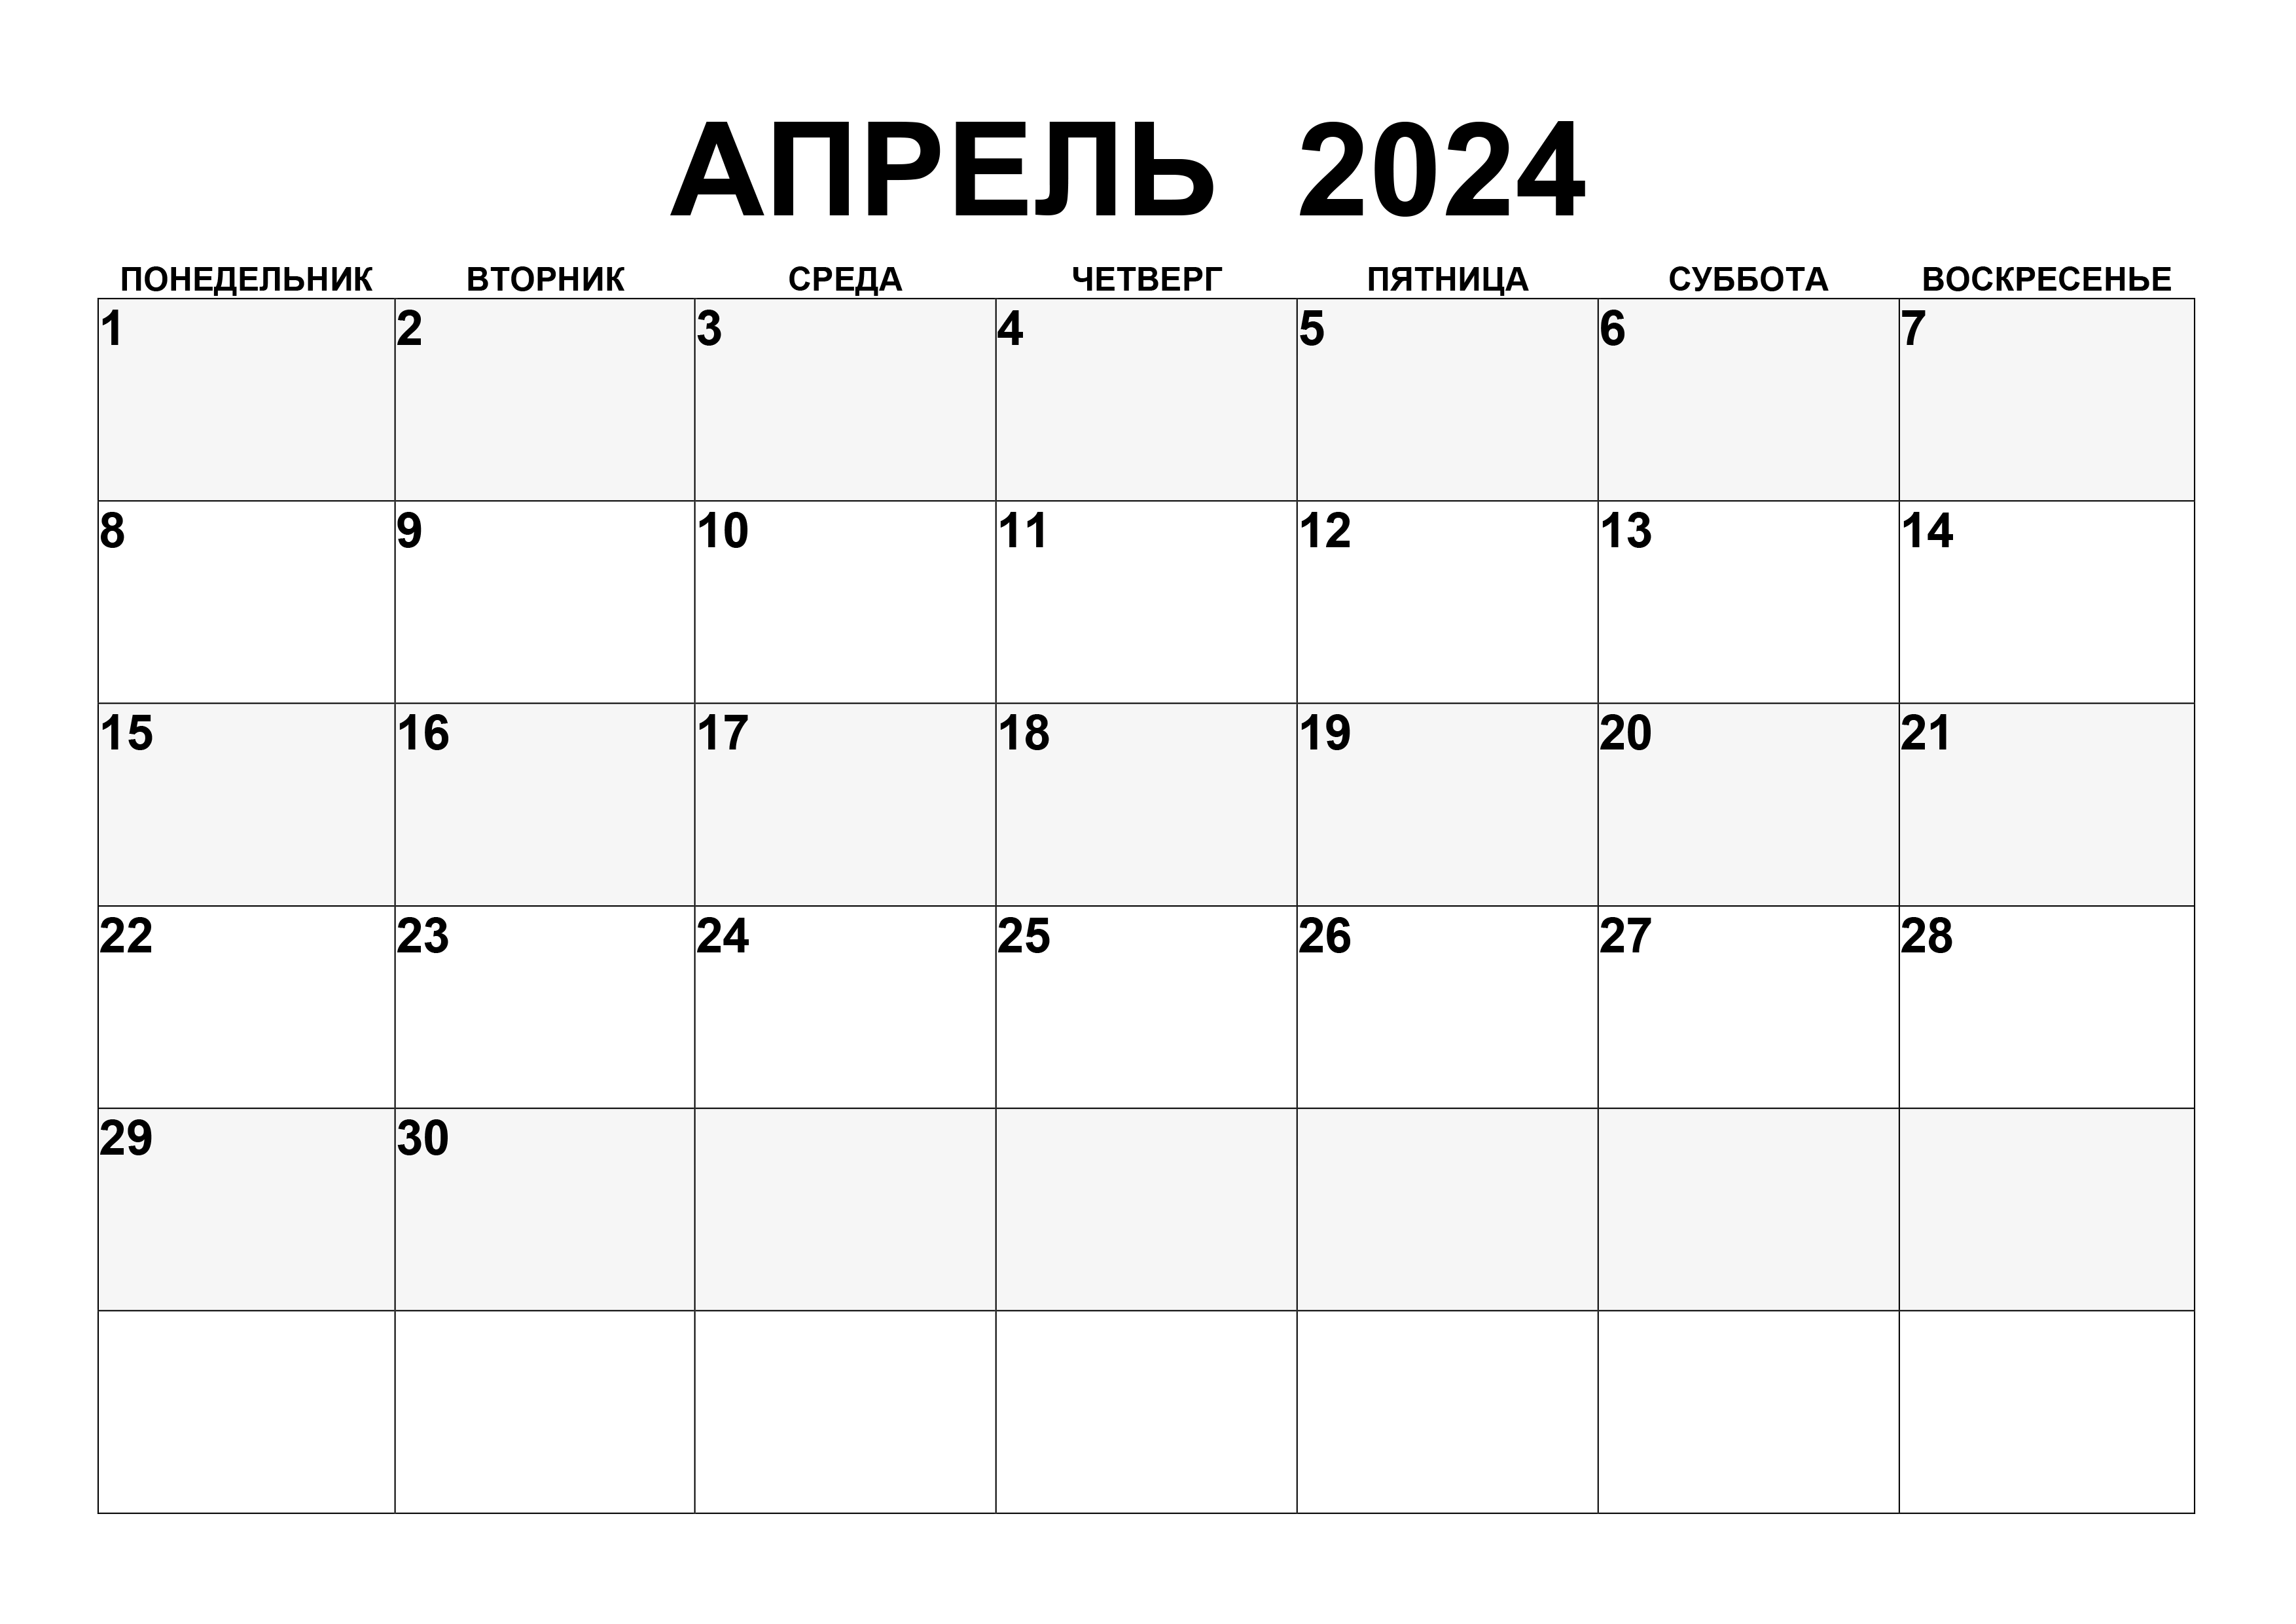 Когда будут детские в апреле 2024. Календарь апрель 2024. Календарь на апр 2024. Rfktylfhm YF fghktm 2024.